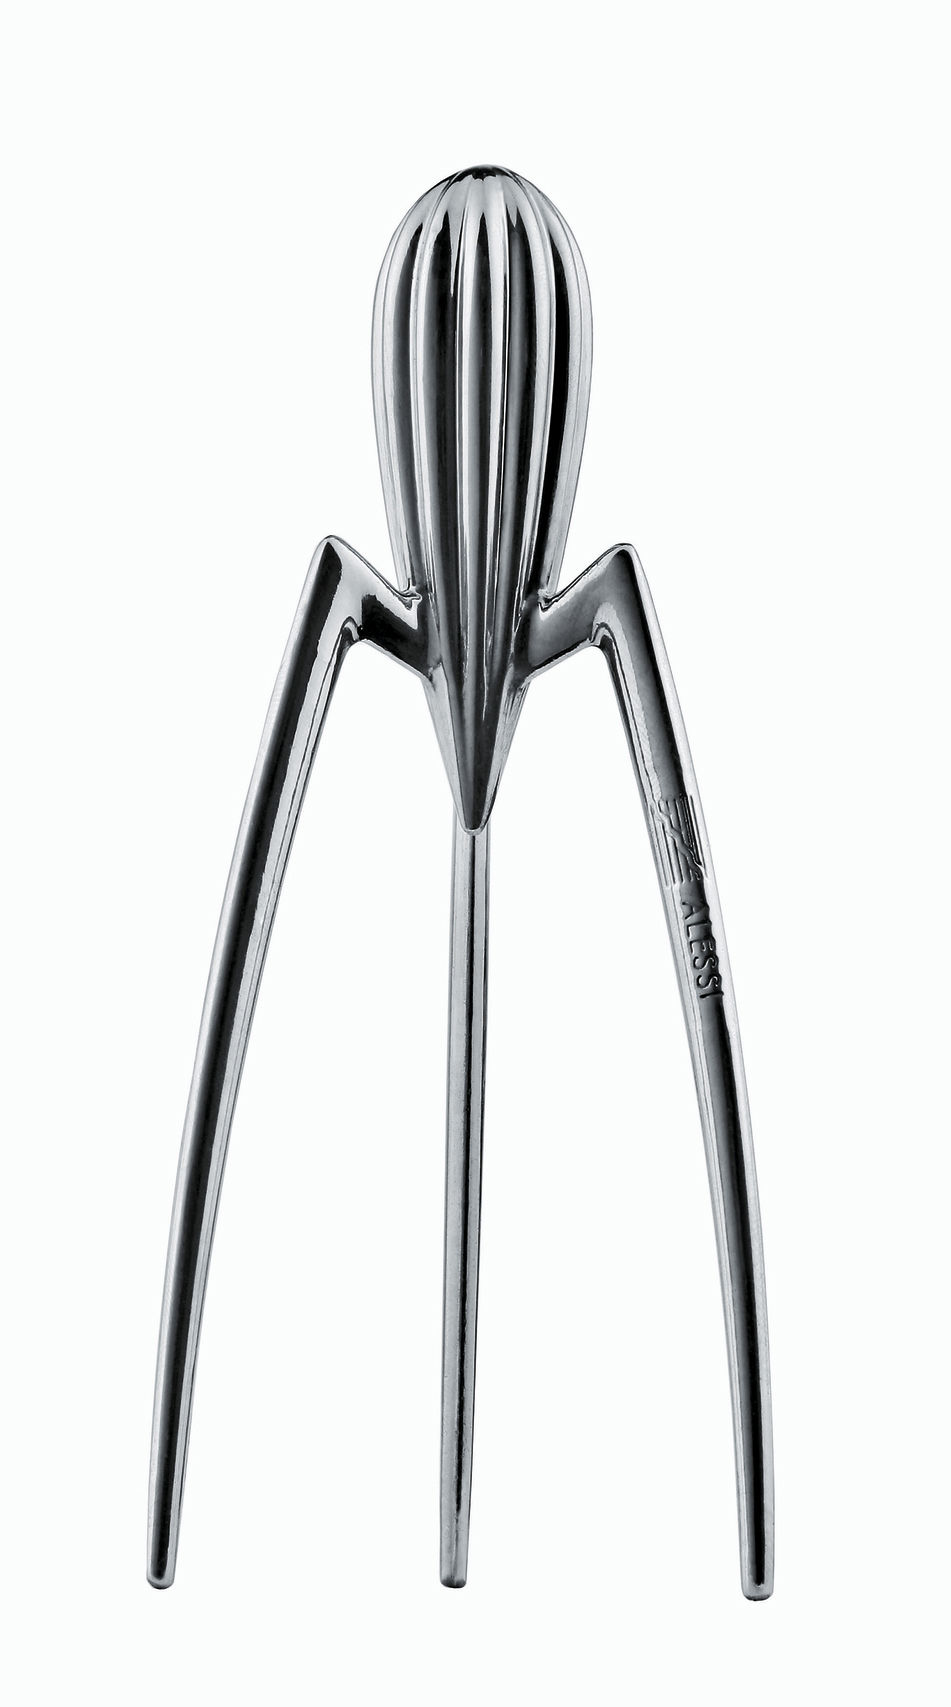 Un presse agrumes designé par Starck pour lui en mettre plein la vue !
Presse agrumes Alessi - Philippe Starck - 60 €